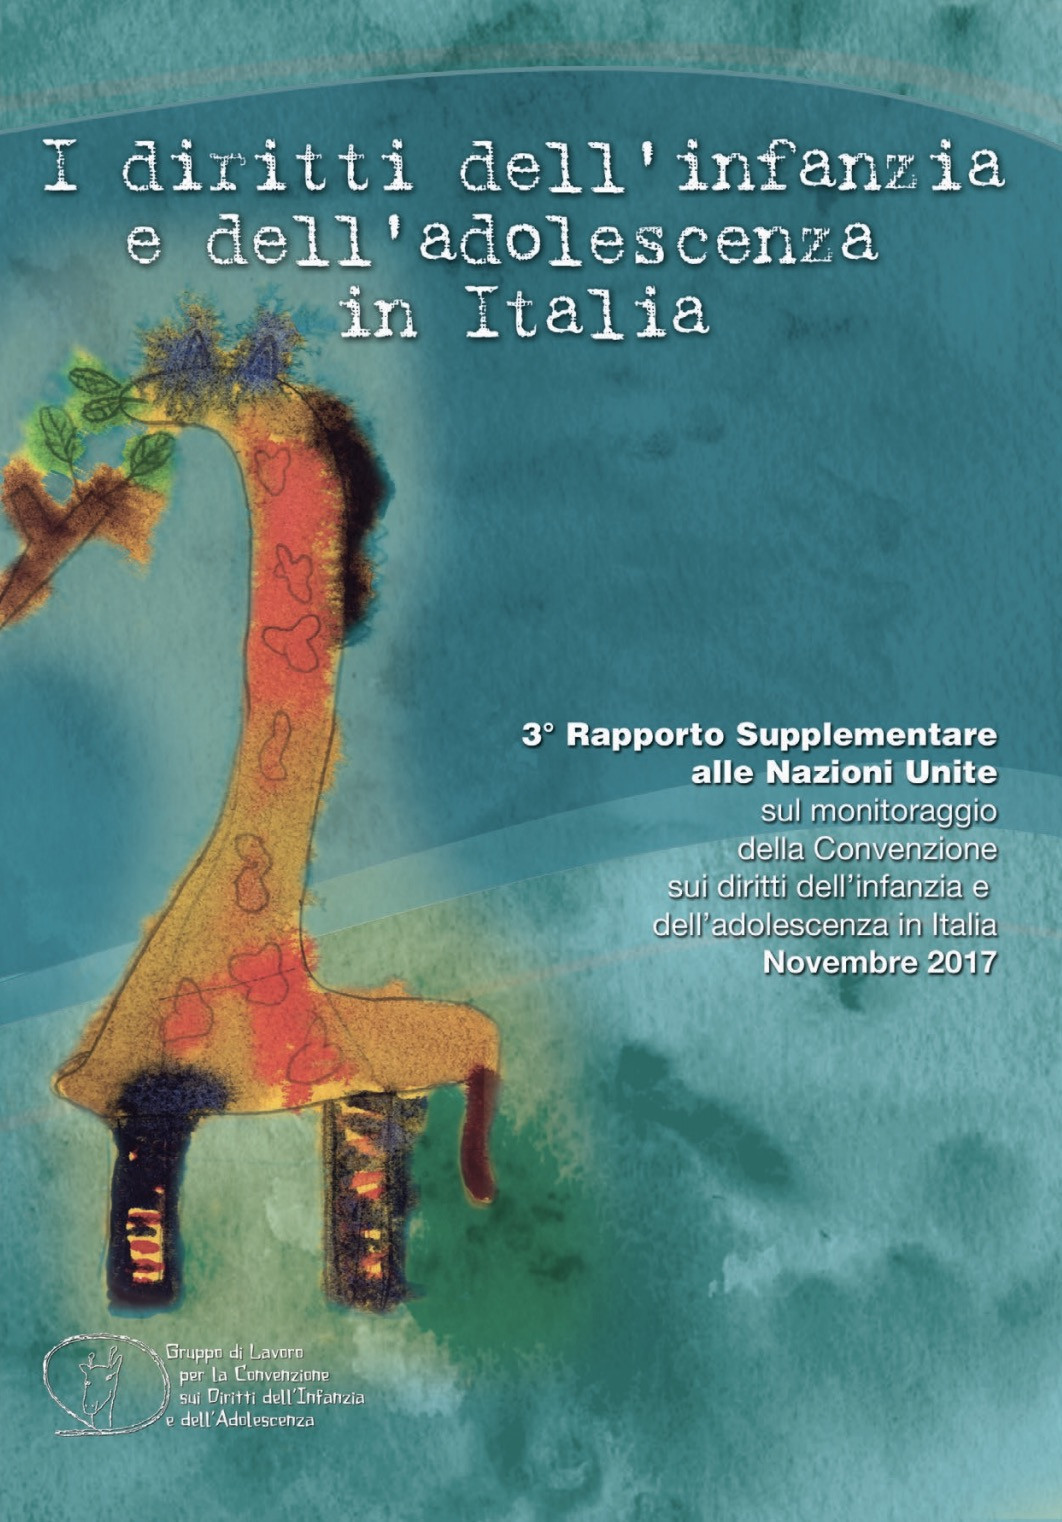 Presentazione 3° rapporto supplementare CRC in Italia 